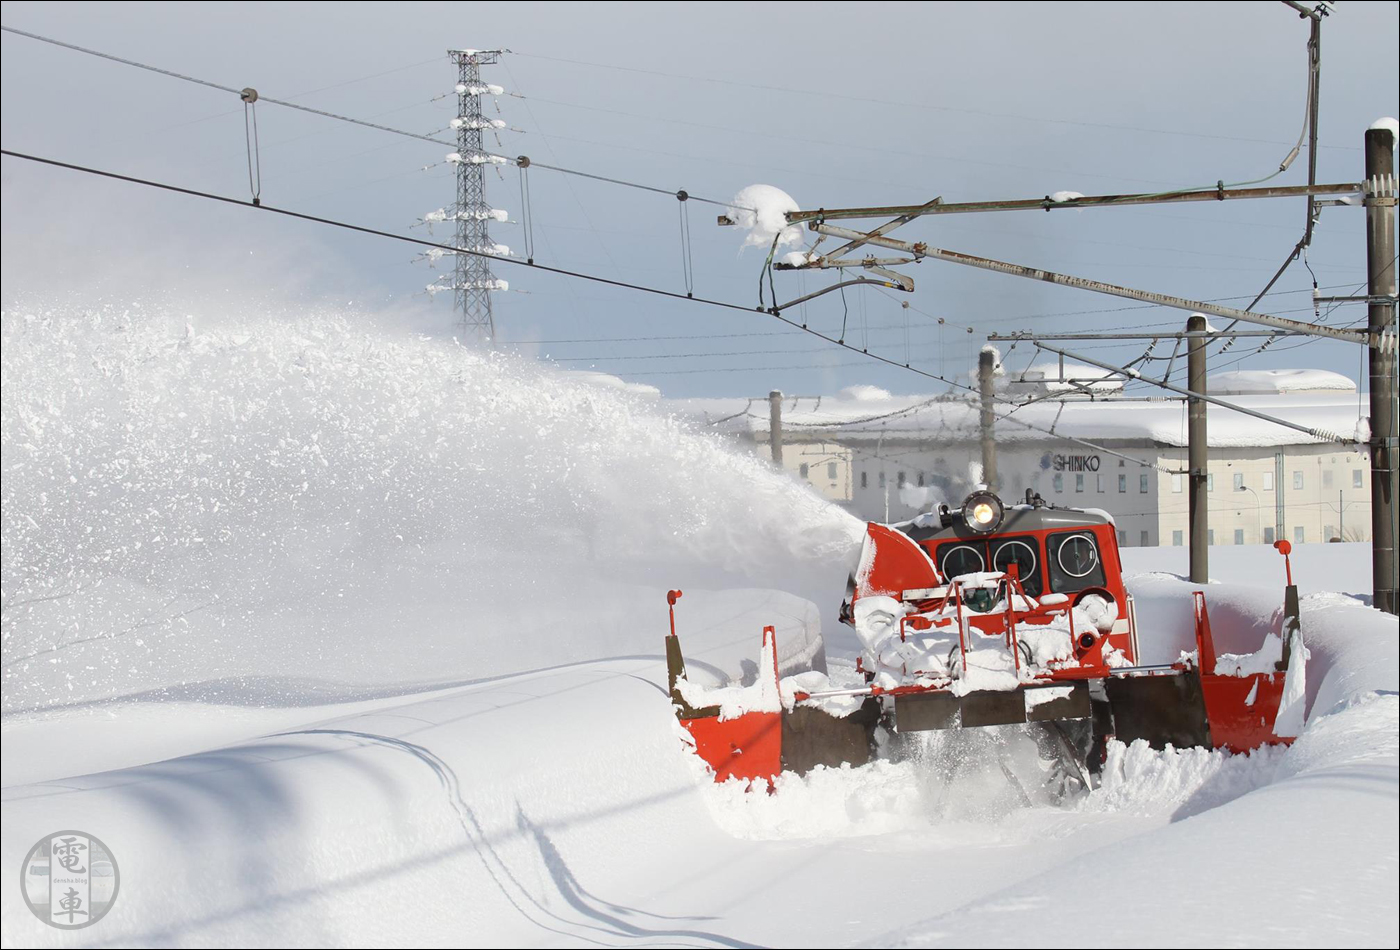 A hó eltakarítása gyakorlatilag az első vasútvonal elkészülte óta számos vasúttársaság elé állít folyamatos, évről évre visszatérő kihívást.